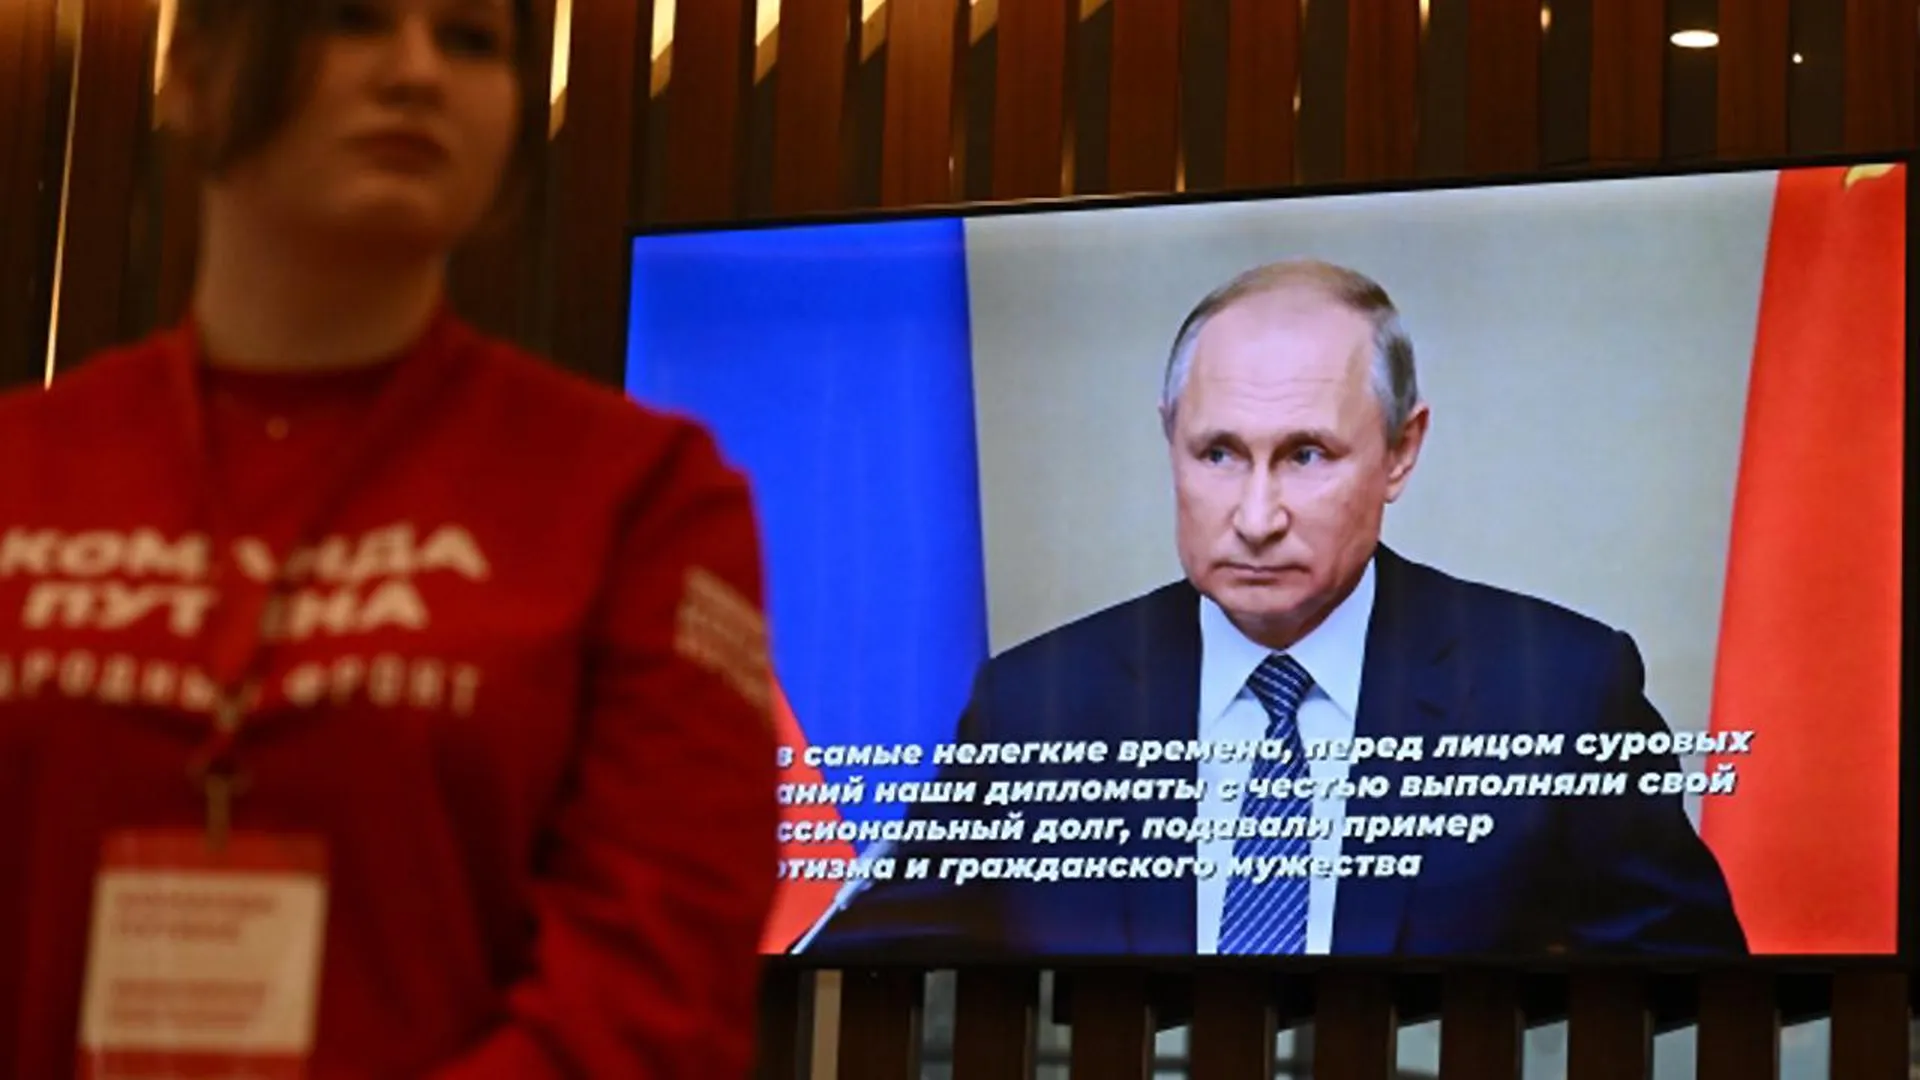 Валентин Розанов: выдвижение Владимира Путина проходит на фоне патриотического подъема